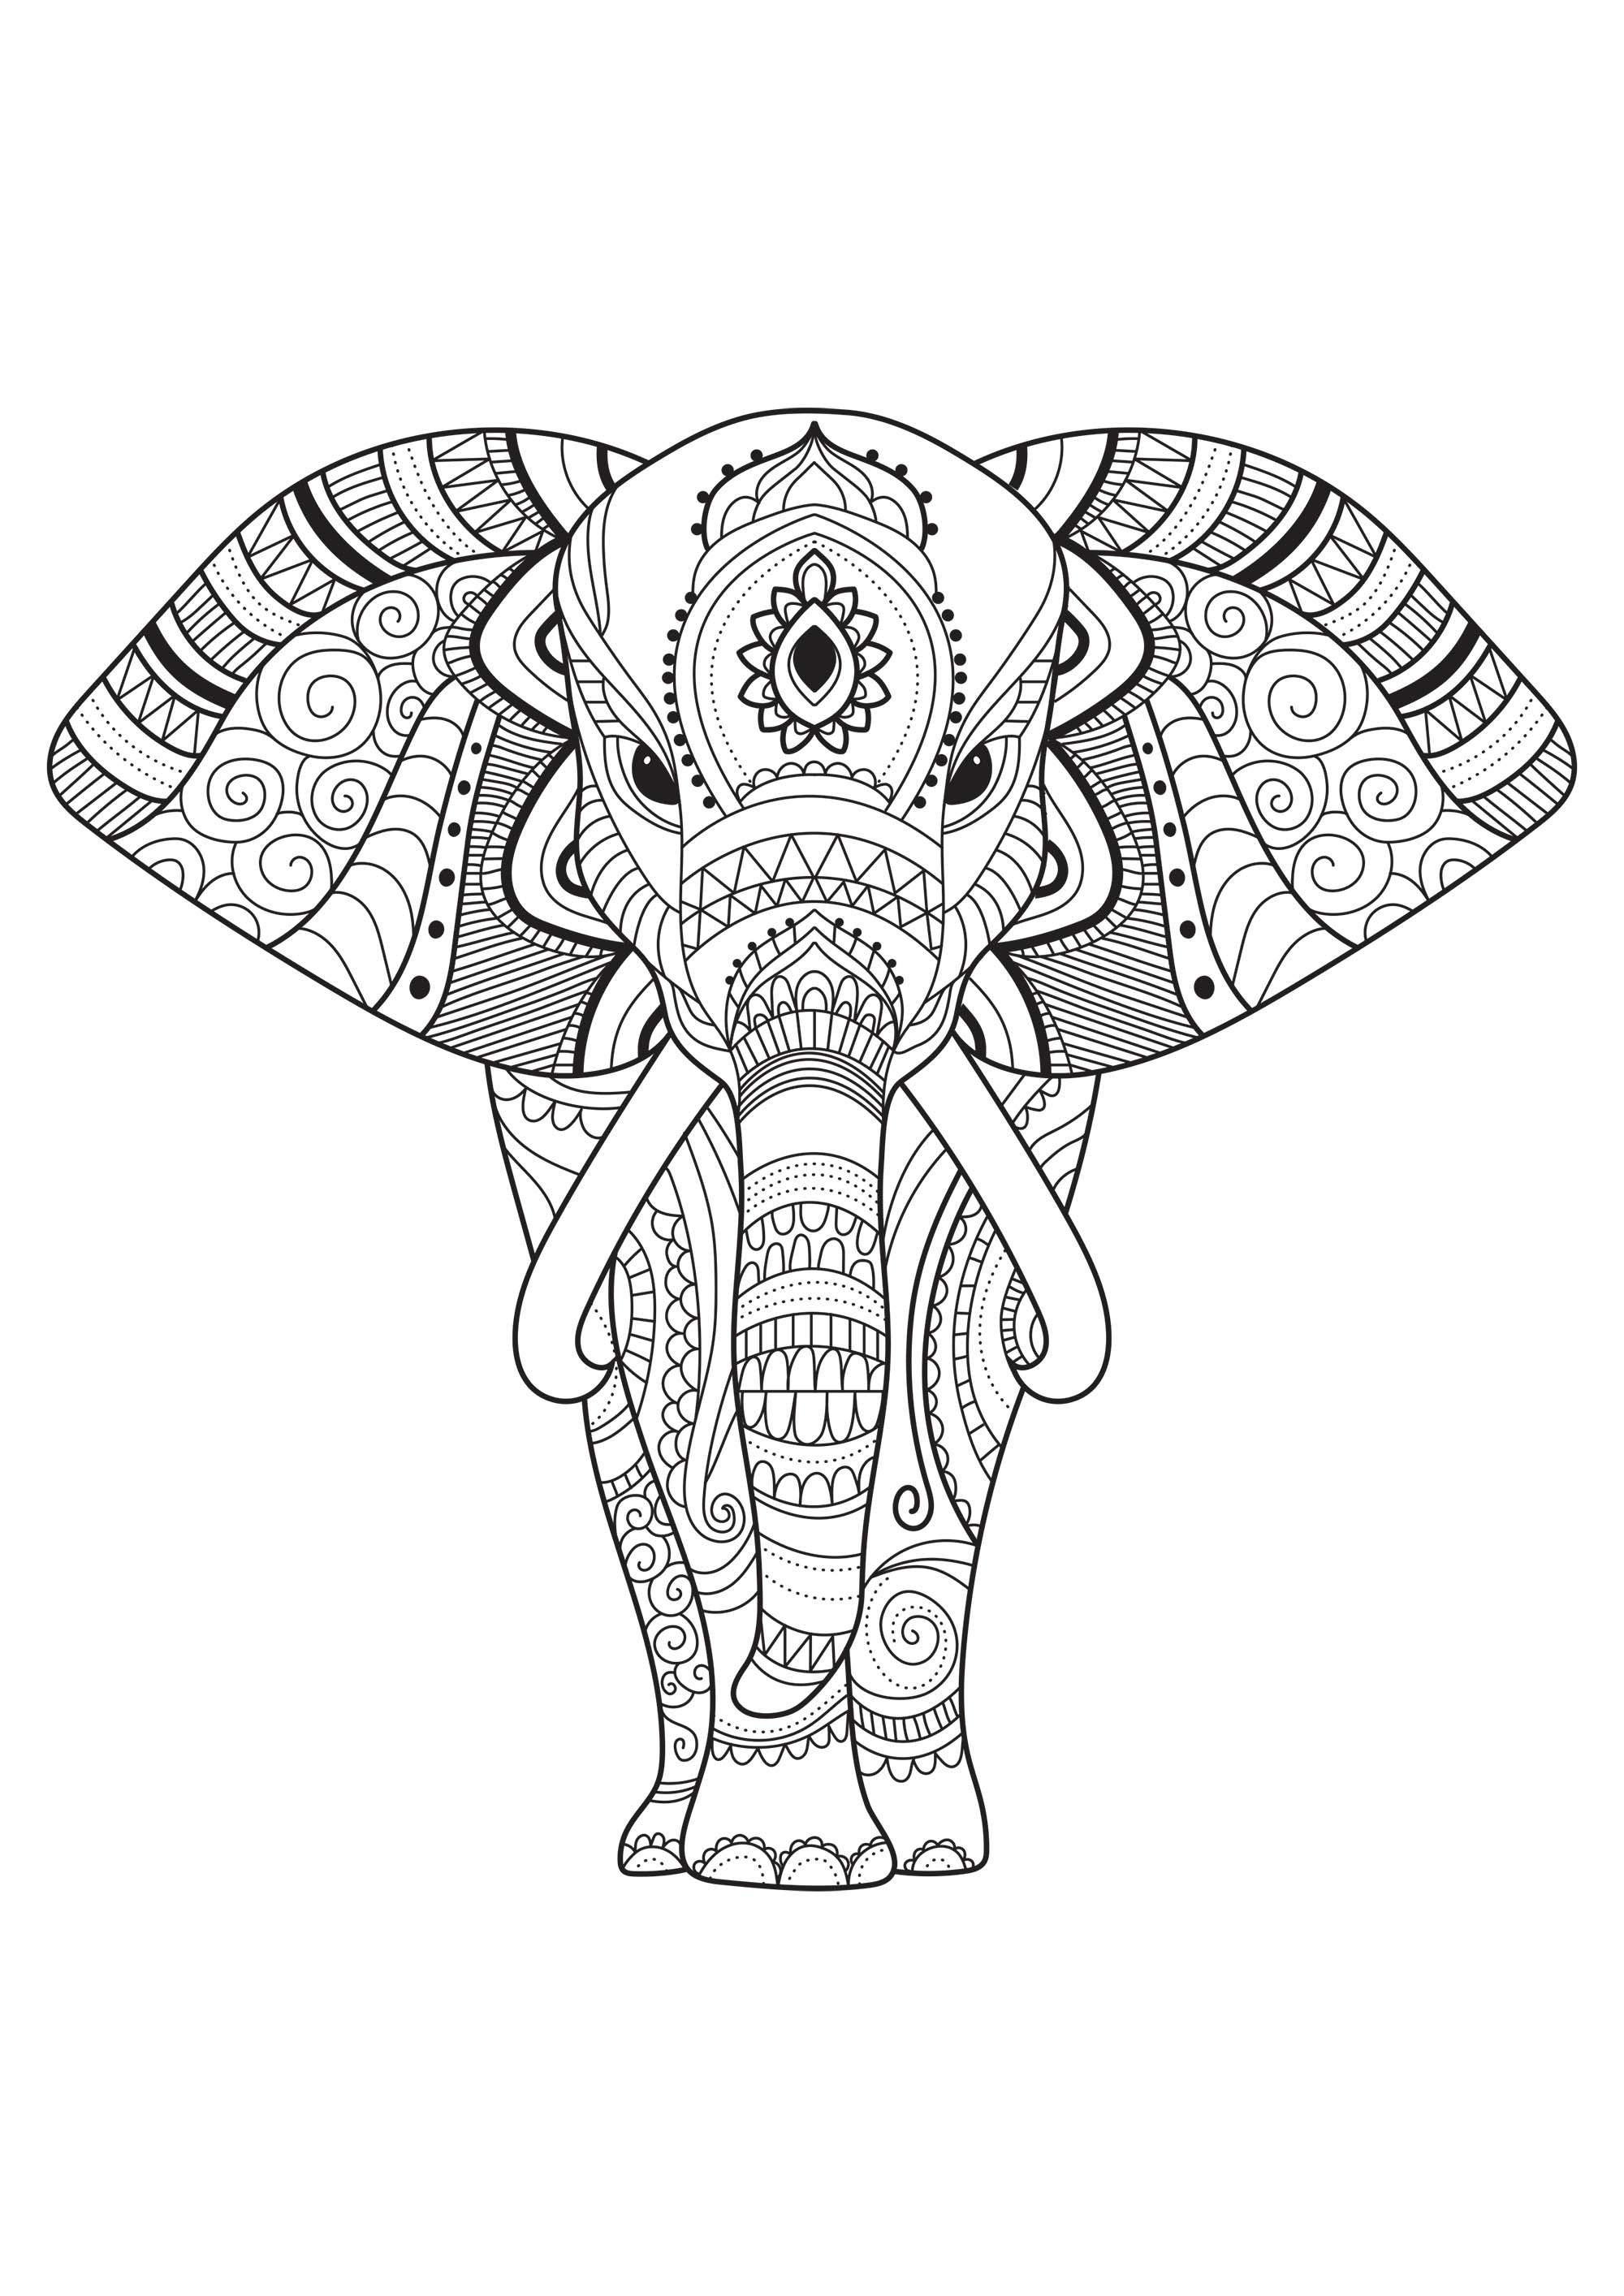 Padrões simples para colorir neste majestoso elefante. Disponibilizado pelo sítio Gifts.com, Artista : Gifts.com